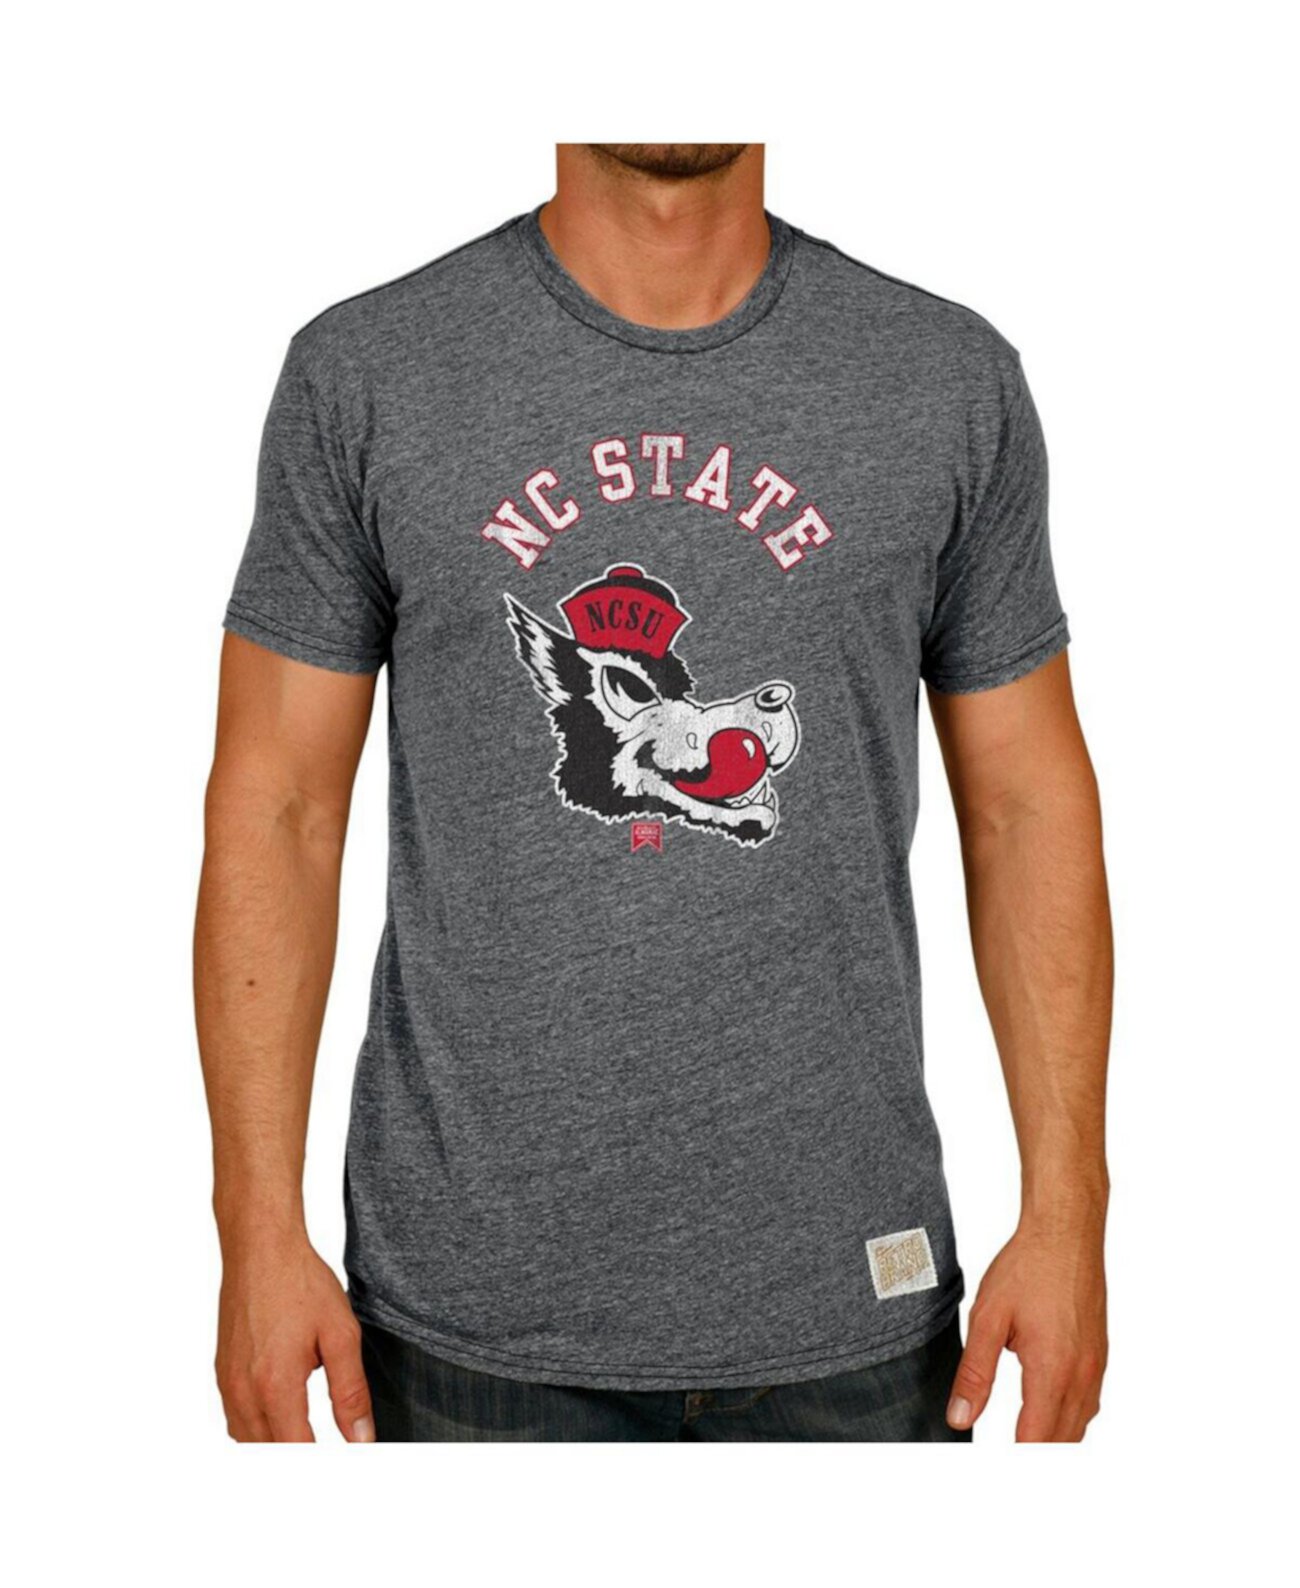 Мужская футболка Heather Black NC State Wolfpack в винтажном стиле с волчьей головой Tri-Blend Original Retro Brand